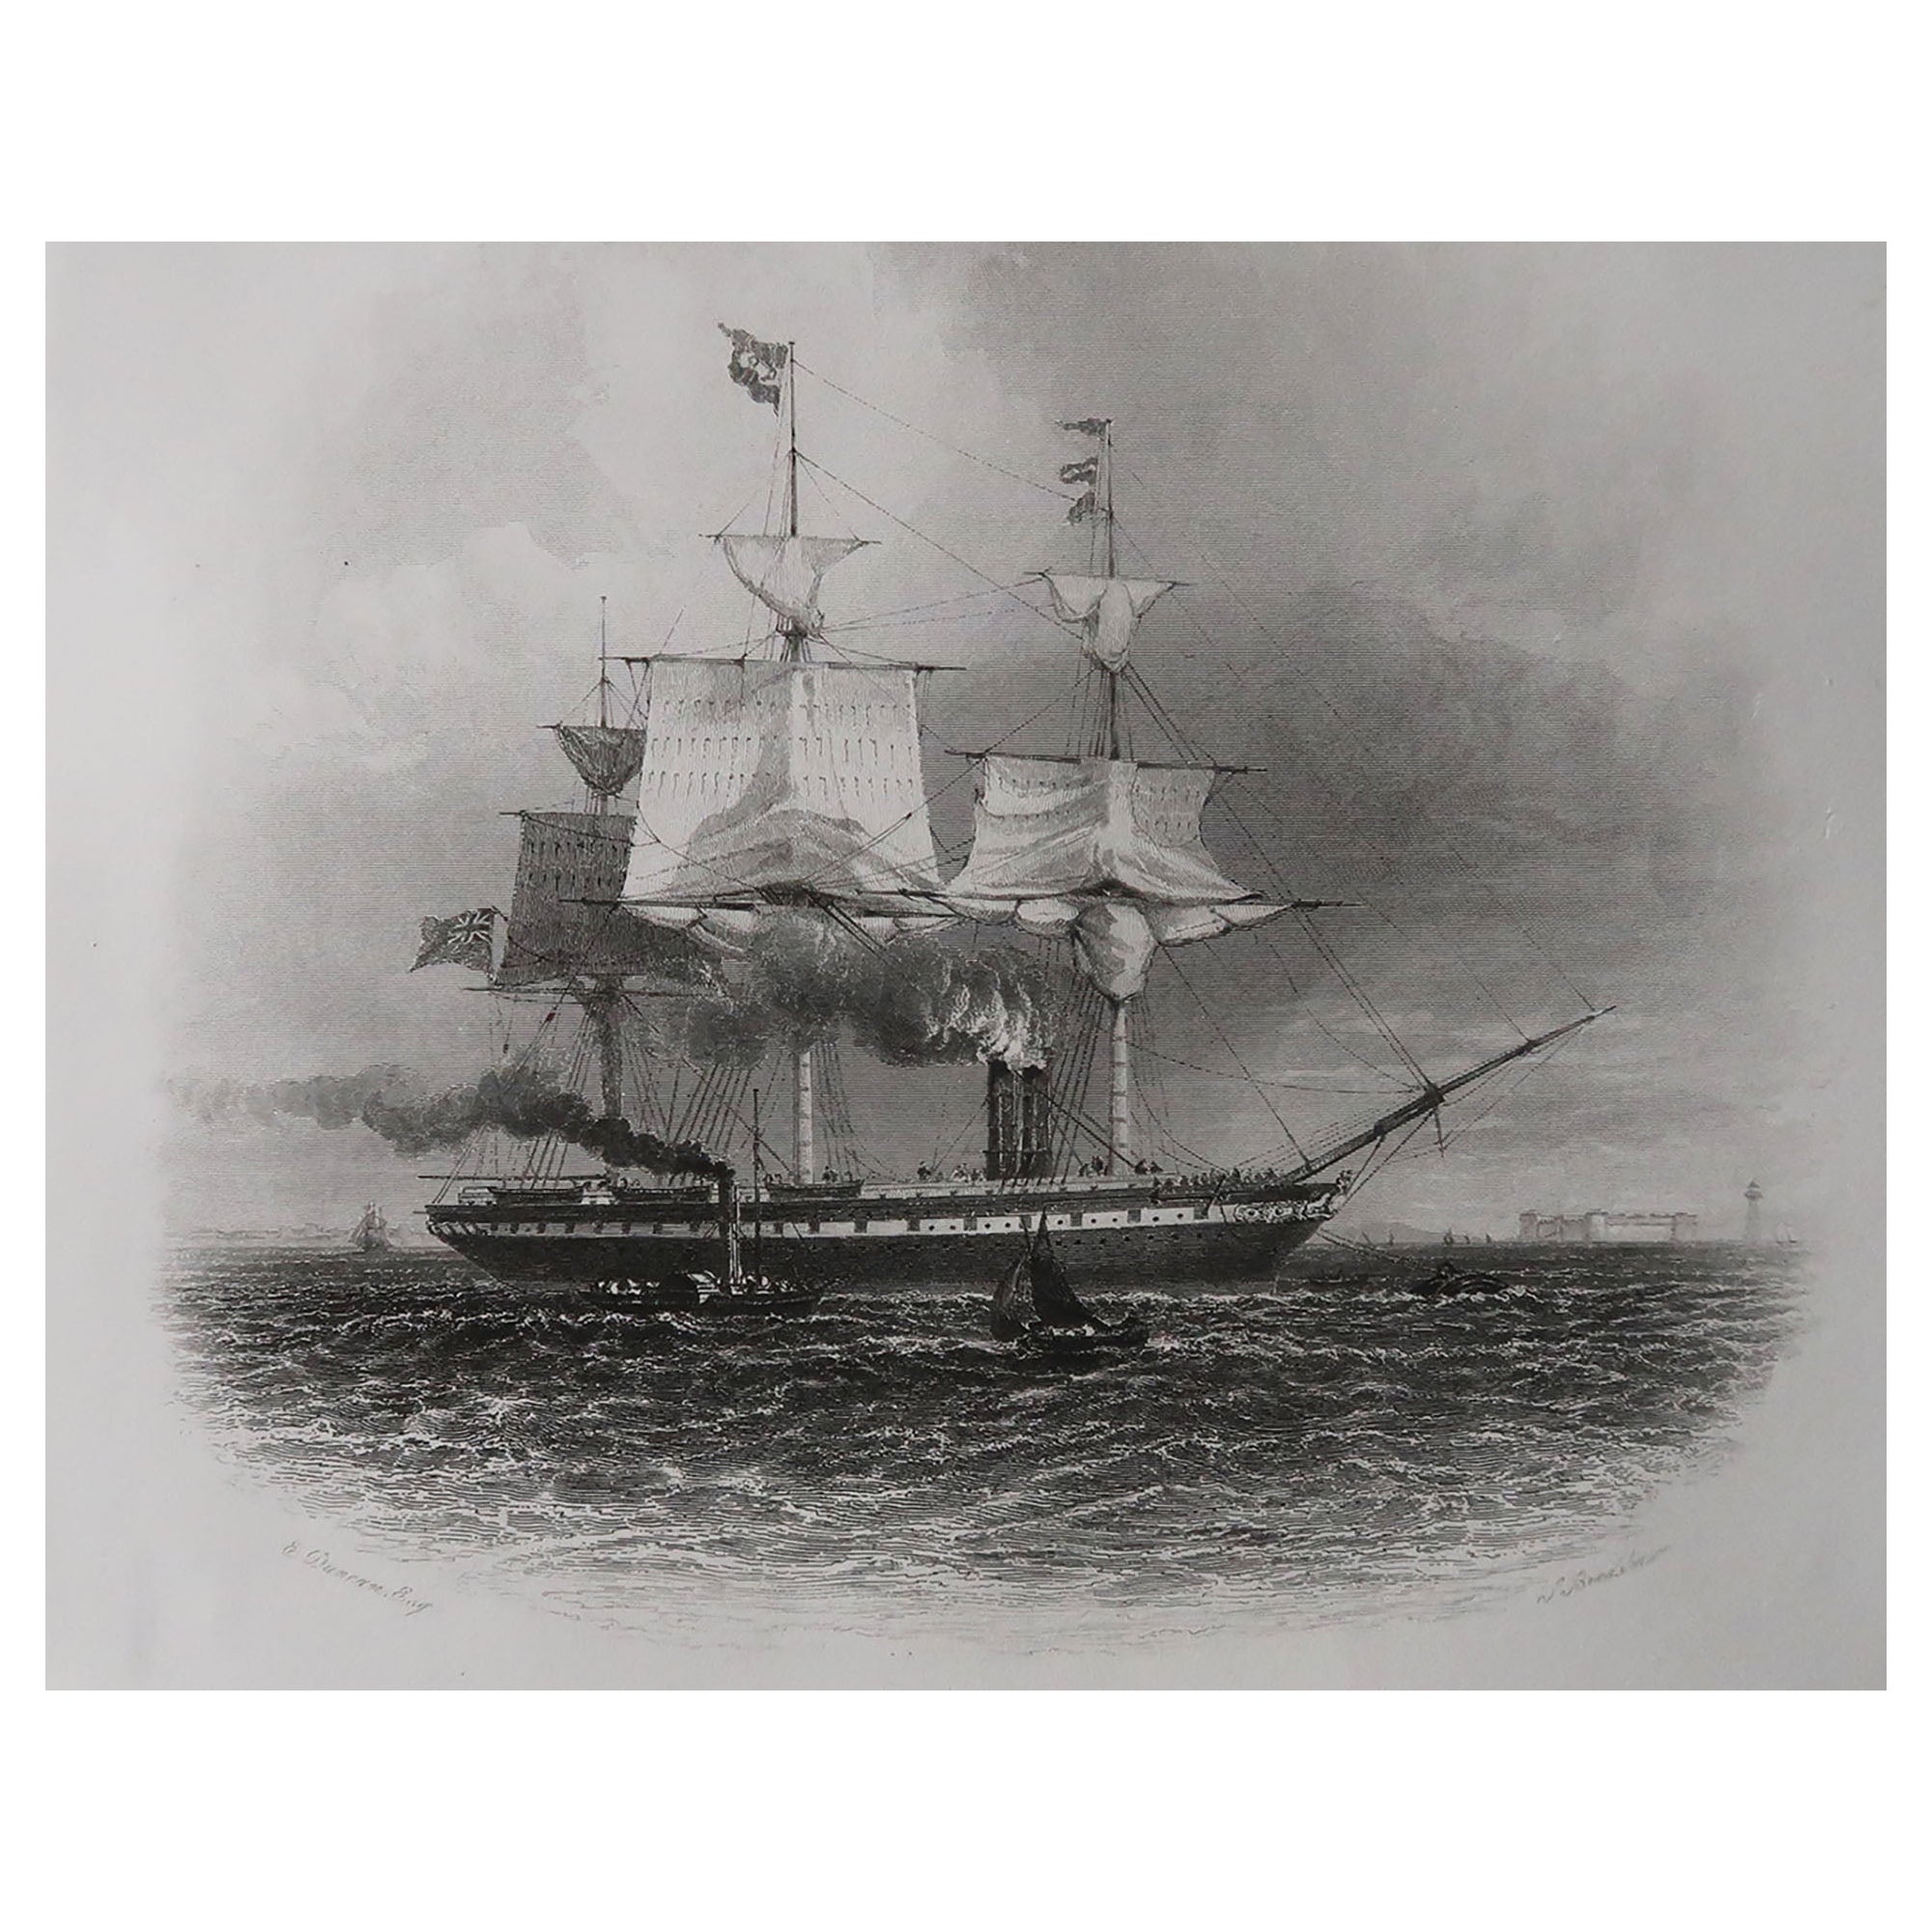 Original Antique Marine Print, the S.S Great Britain, 1853